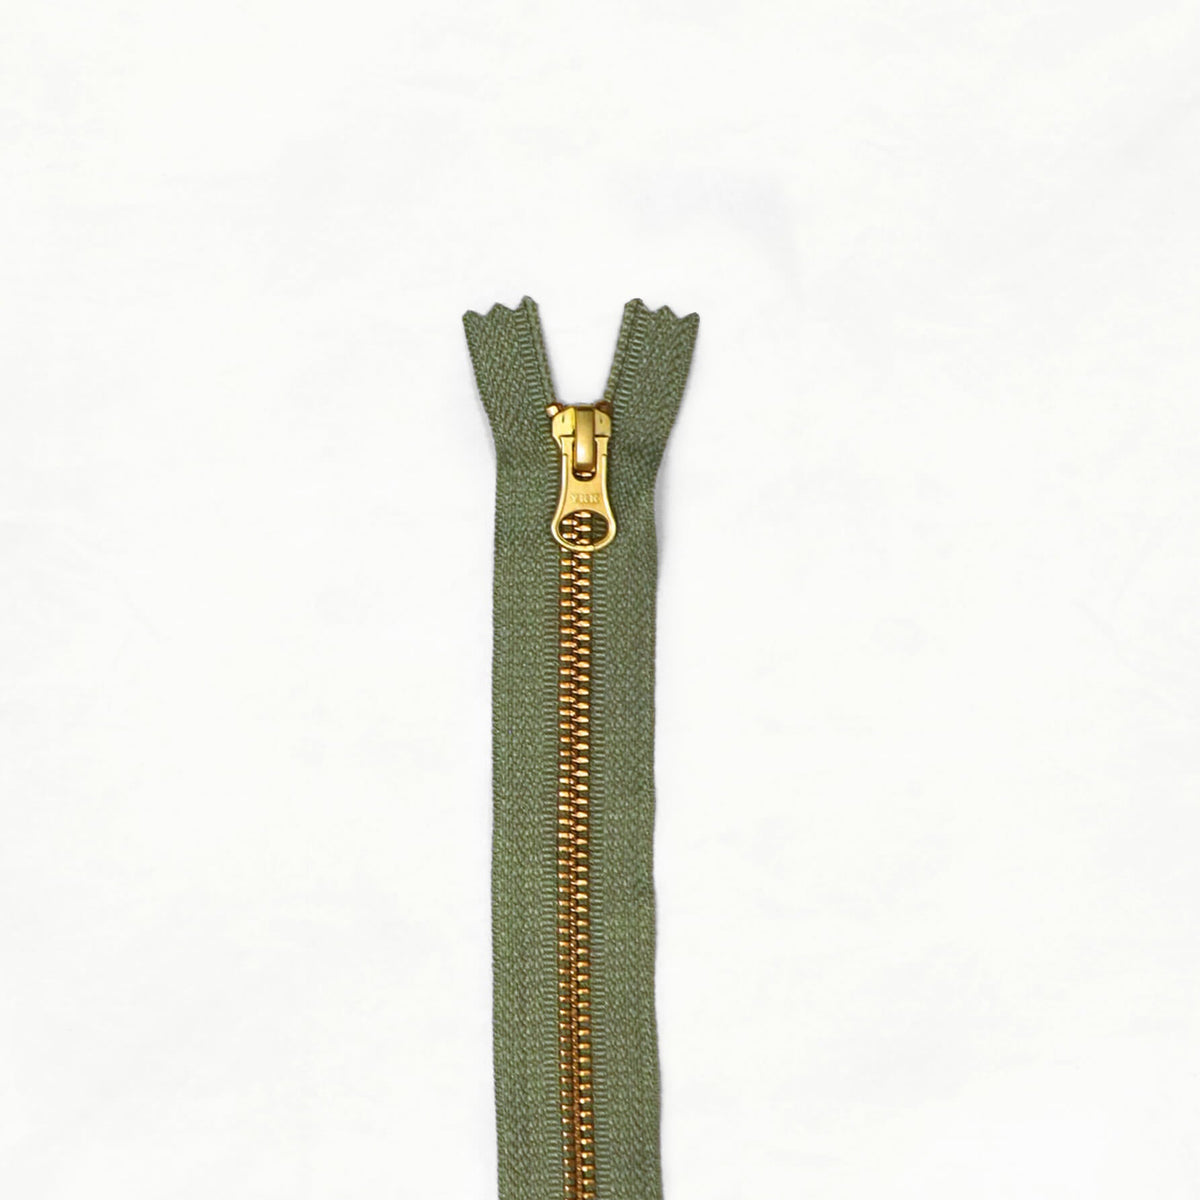 8" Brass Zippers - ZIP - 8 - SAGE - Zippers - Klum House